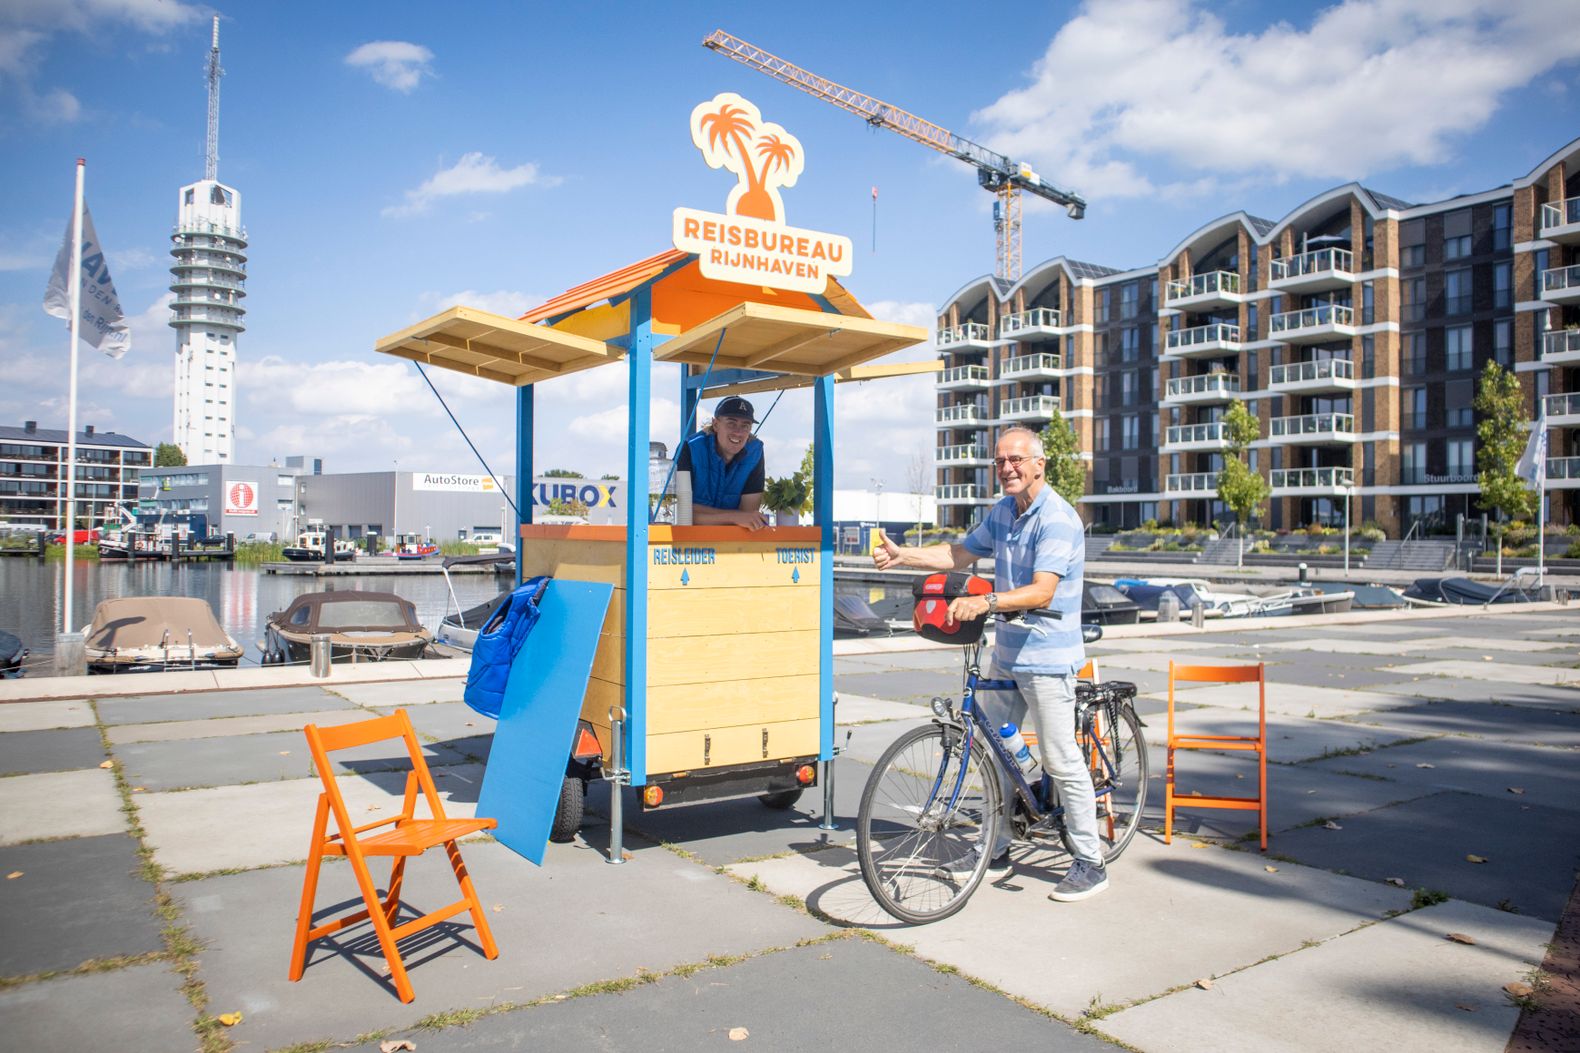 Een vrouw achter het reisbureau kraampje van Rijnhaven met een meneer op zijn fiets die daarnaast staat.